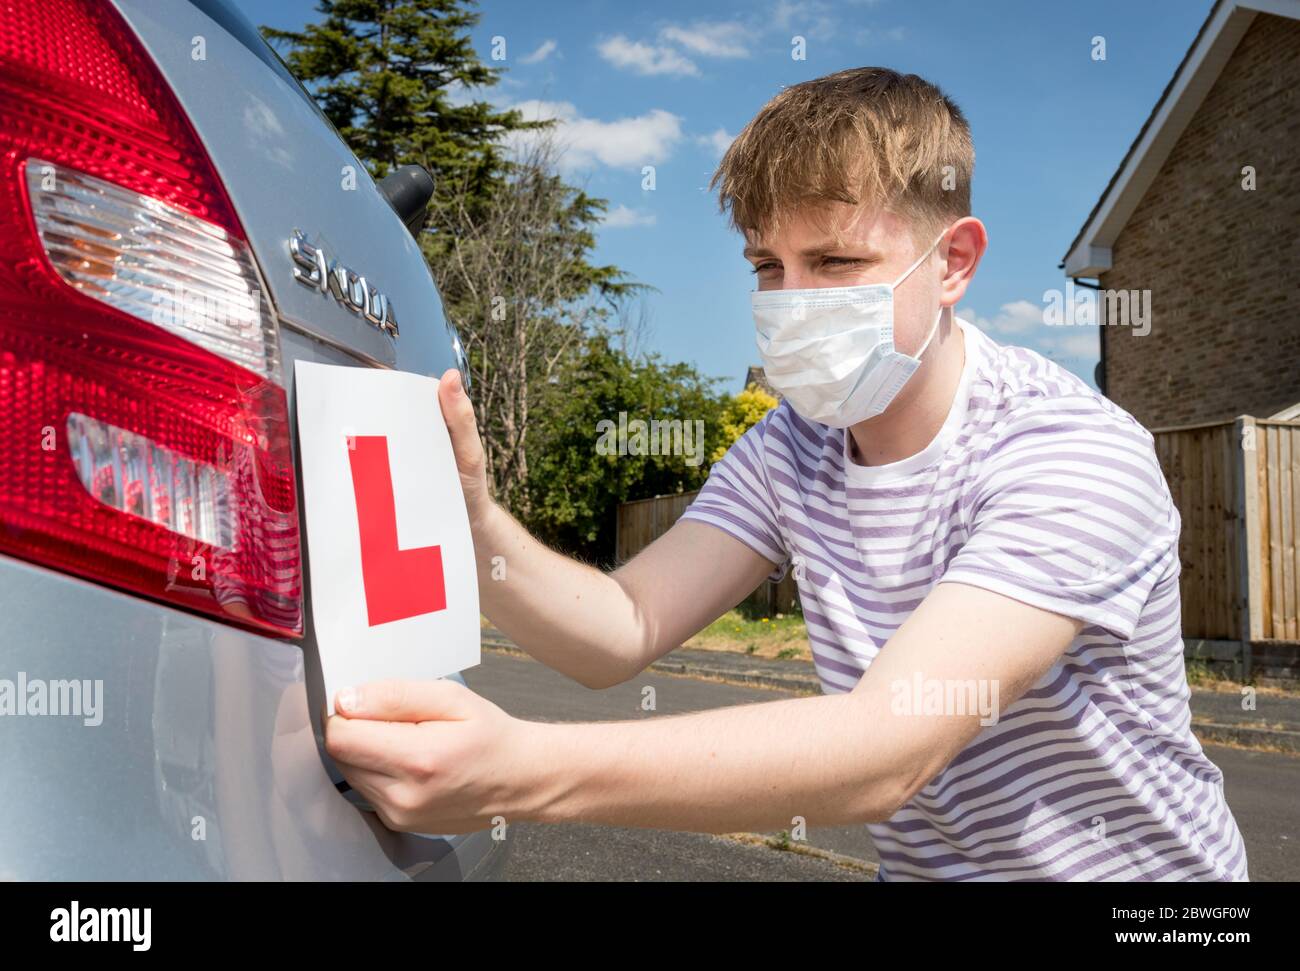 Teenager-Lernfahrer A trägt eine Gesichtsmaske wegen der Coronavirus-Pandemie warten, um seine Fahrstunde zu beginnen. Stockfoto